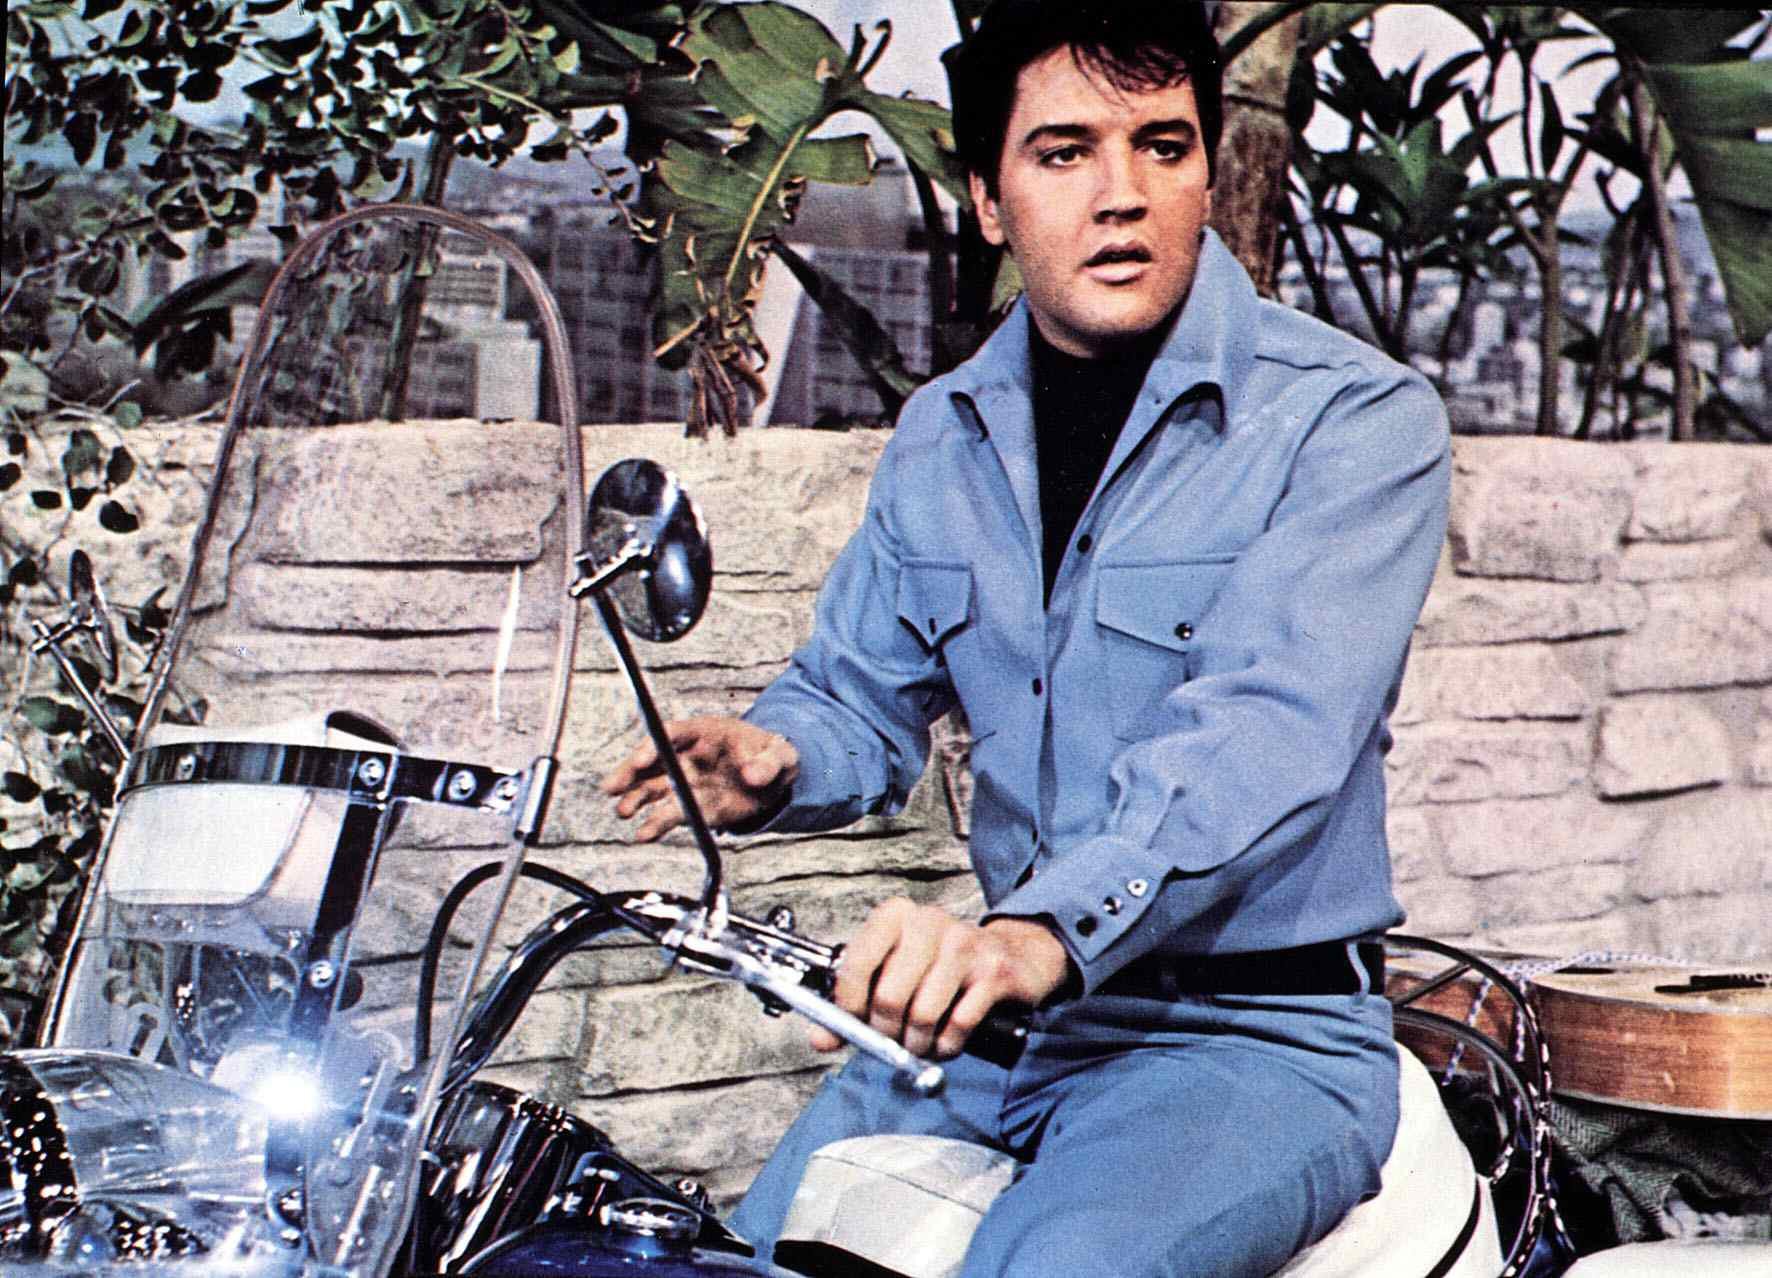 Elvis Presley on a motorcycle